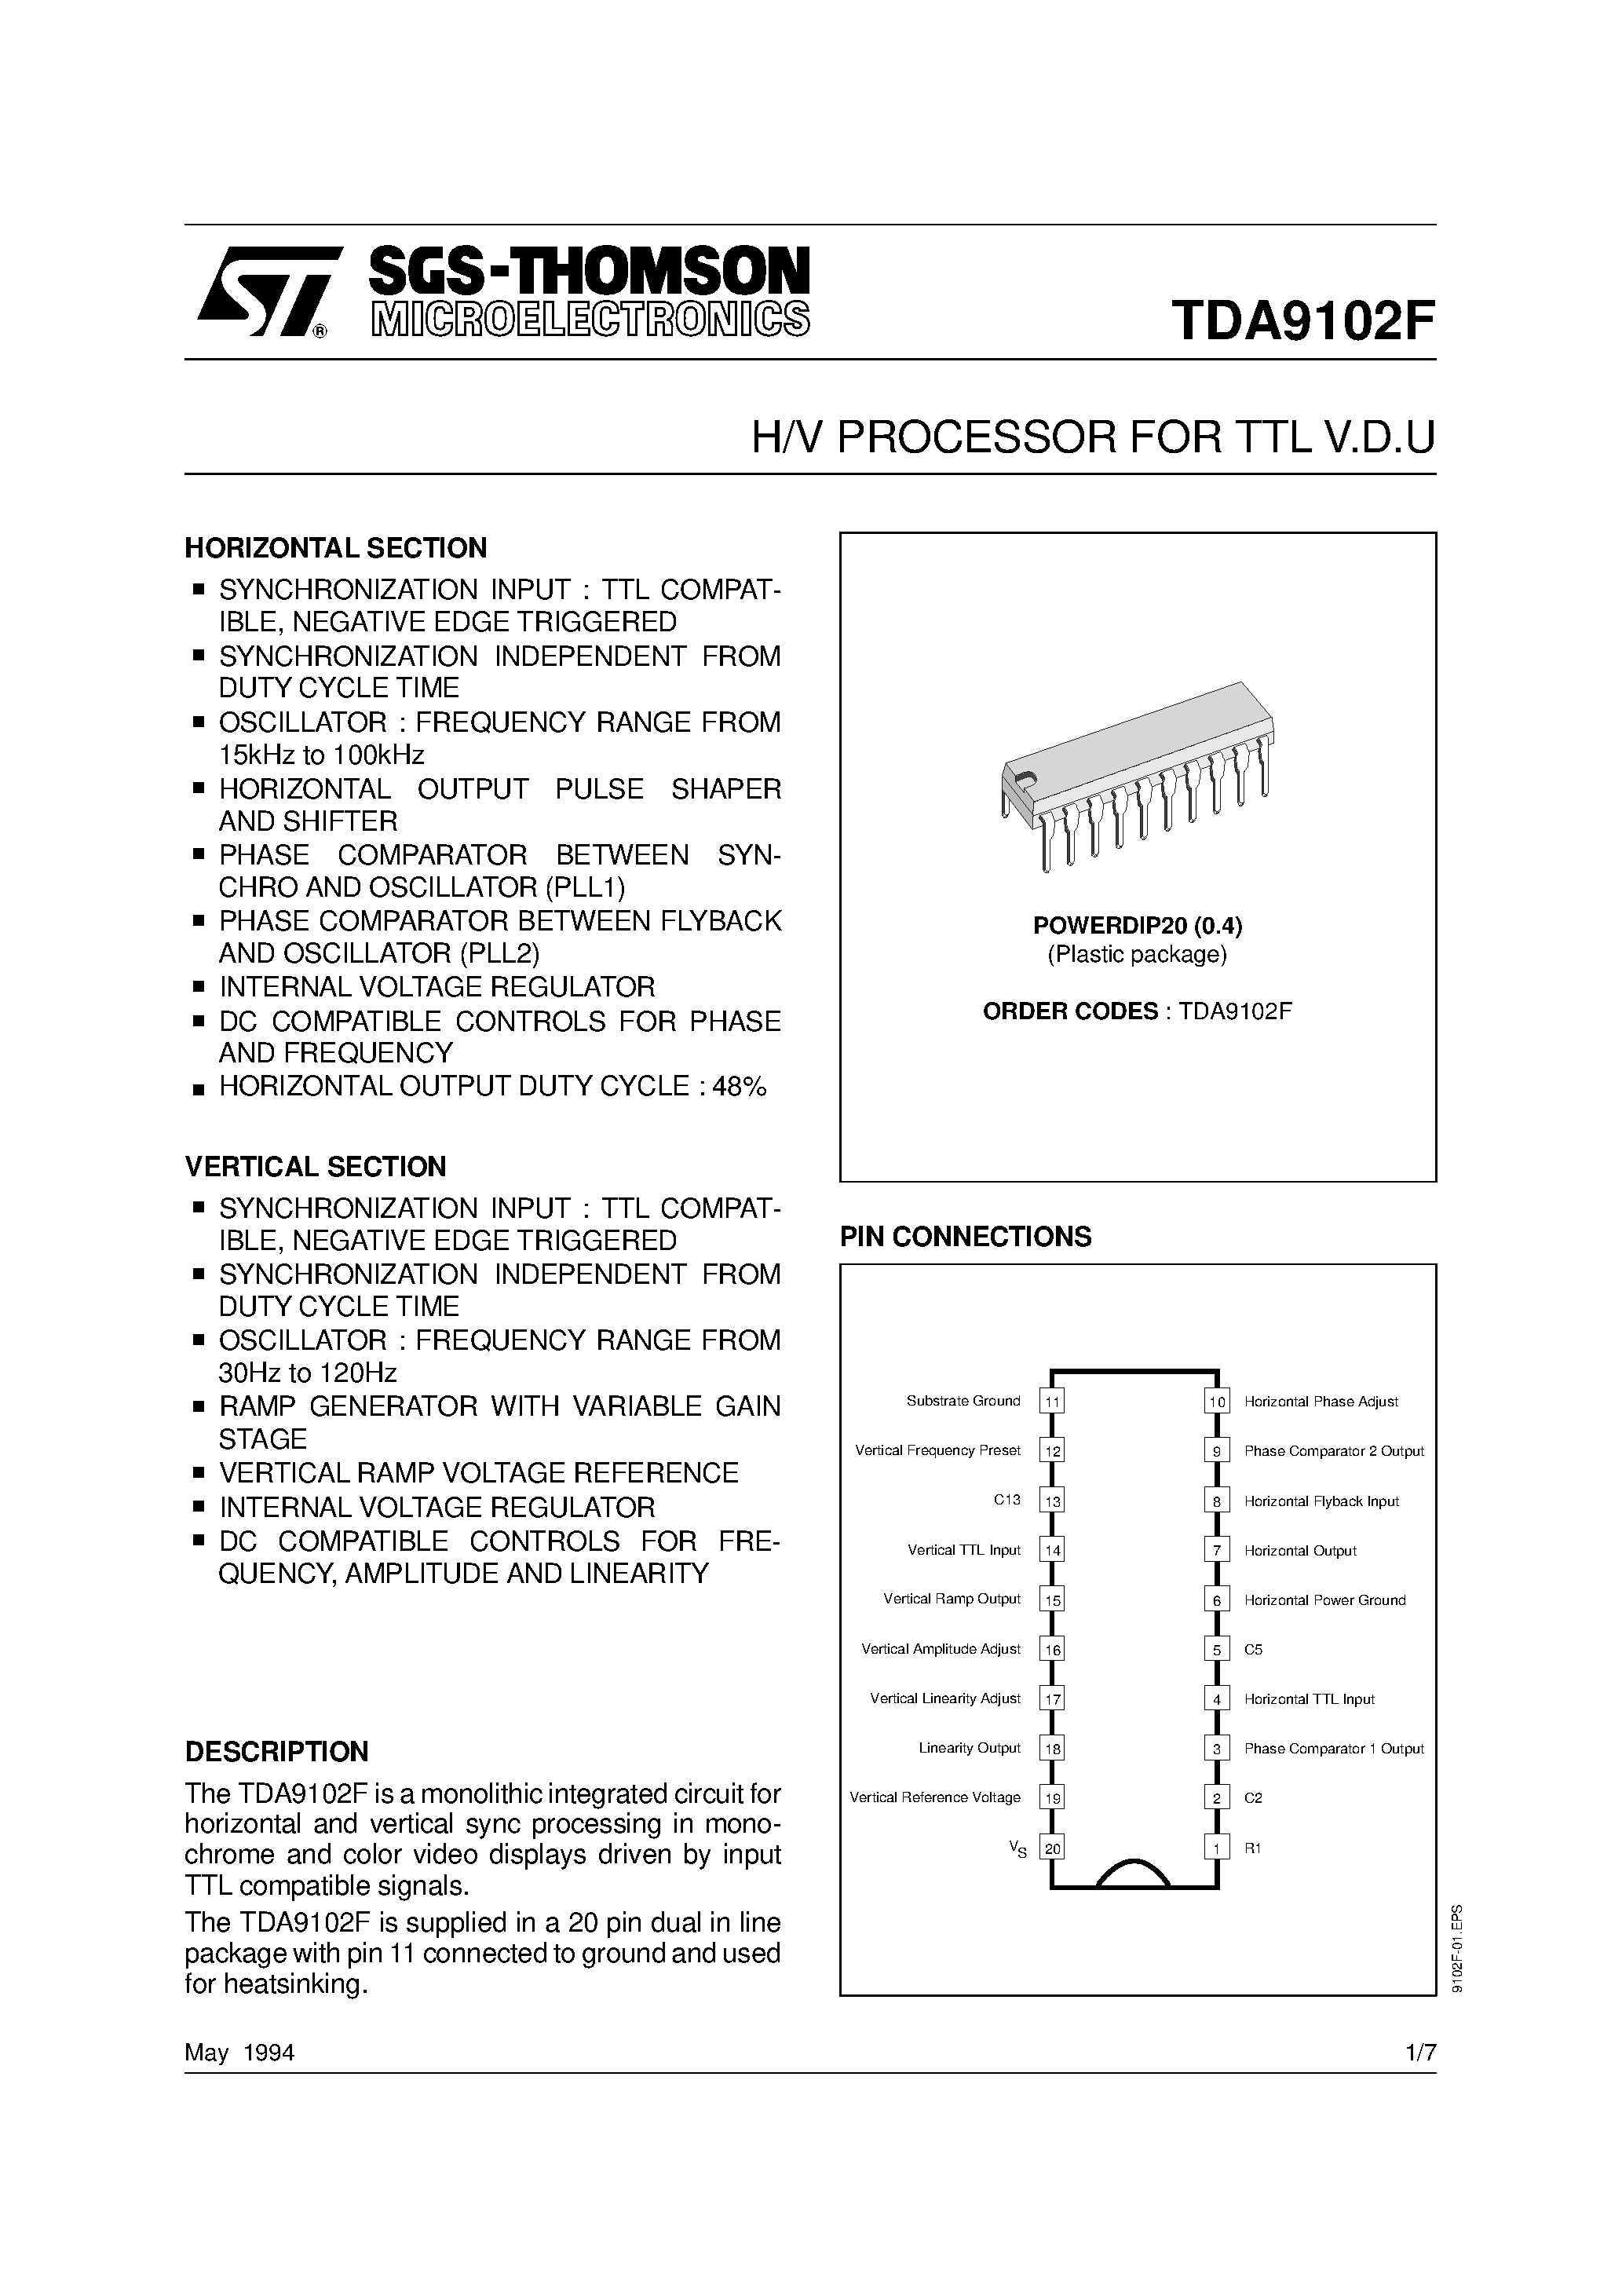 Datasheet TDA9102F - H/V PROCESSOR FOR TTL V.D.U page 1